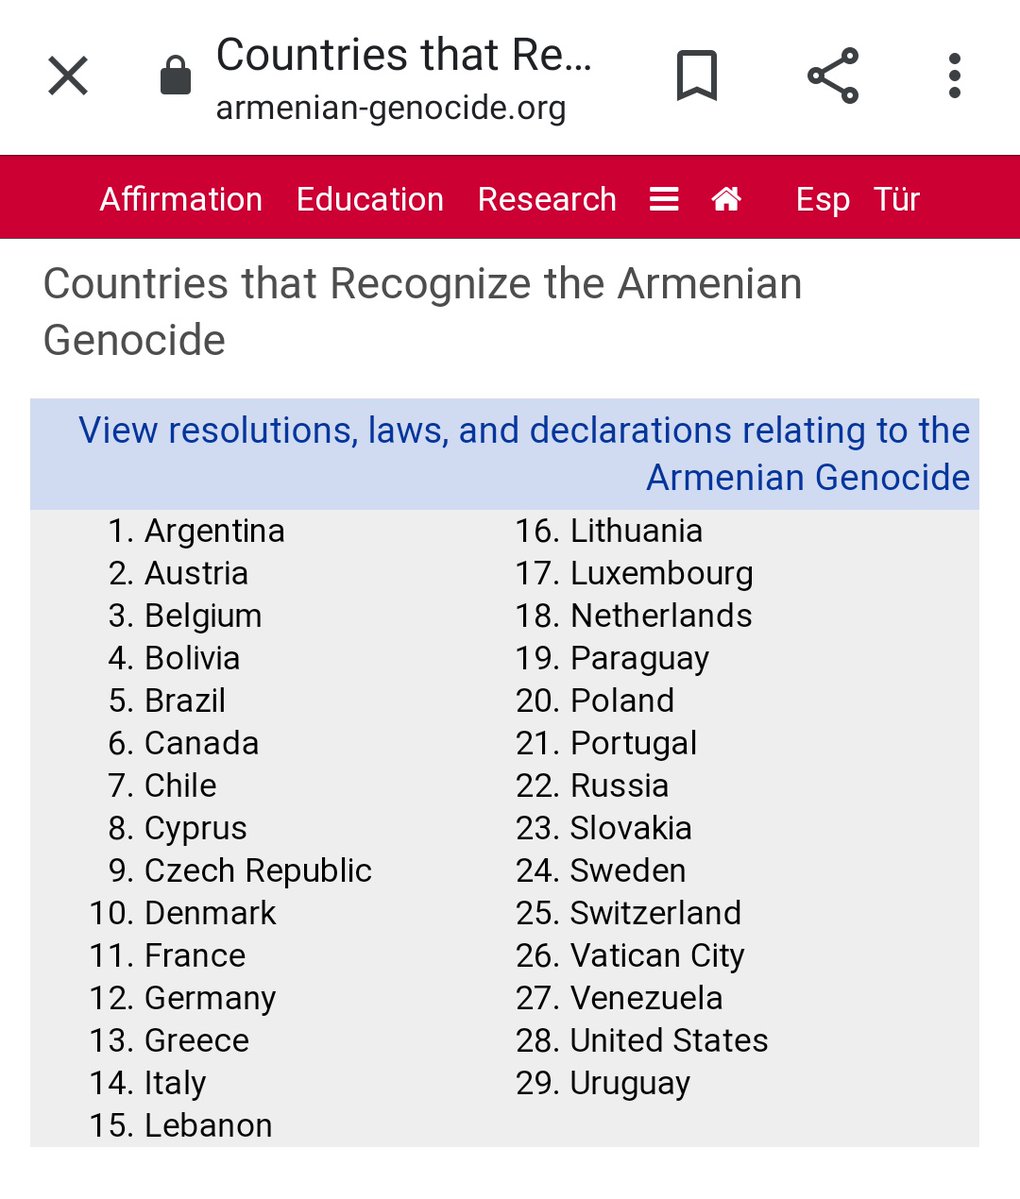 Heute vor 105 Jahren begann der #Völkermord an Armeniern im Osmanischen Reich. Dabei wurden
1.5 Millionen Armenier ermordet.

Hier eine Liste der Staaten, die den #Genozid seitdem anerkannt haben.

Die #Türkei ist immer noch nicht dabei. #April24 #ArmenianGenocide #Aghet